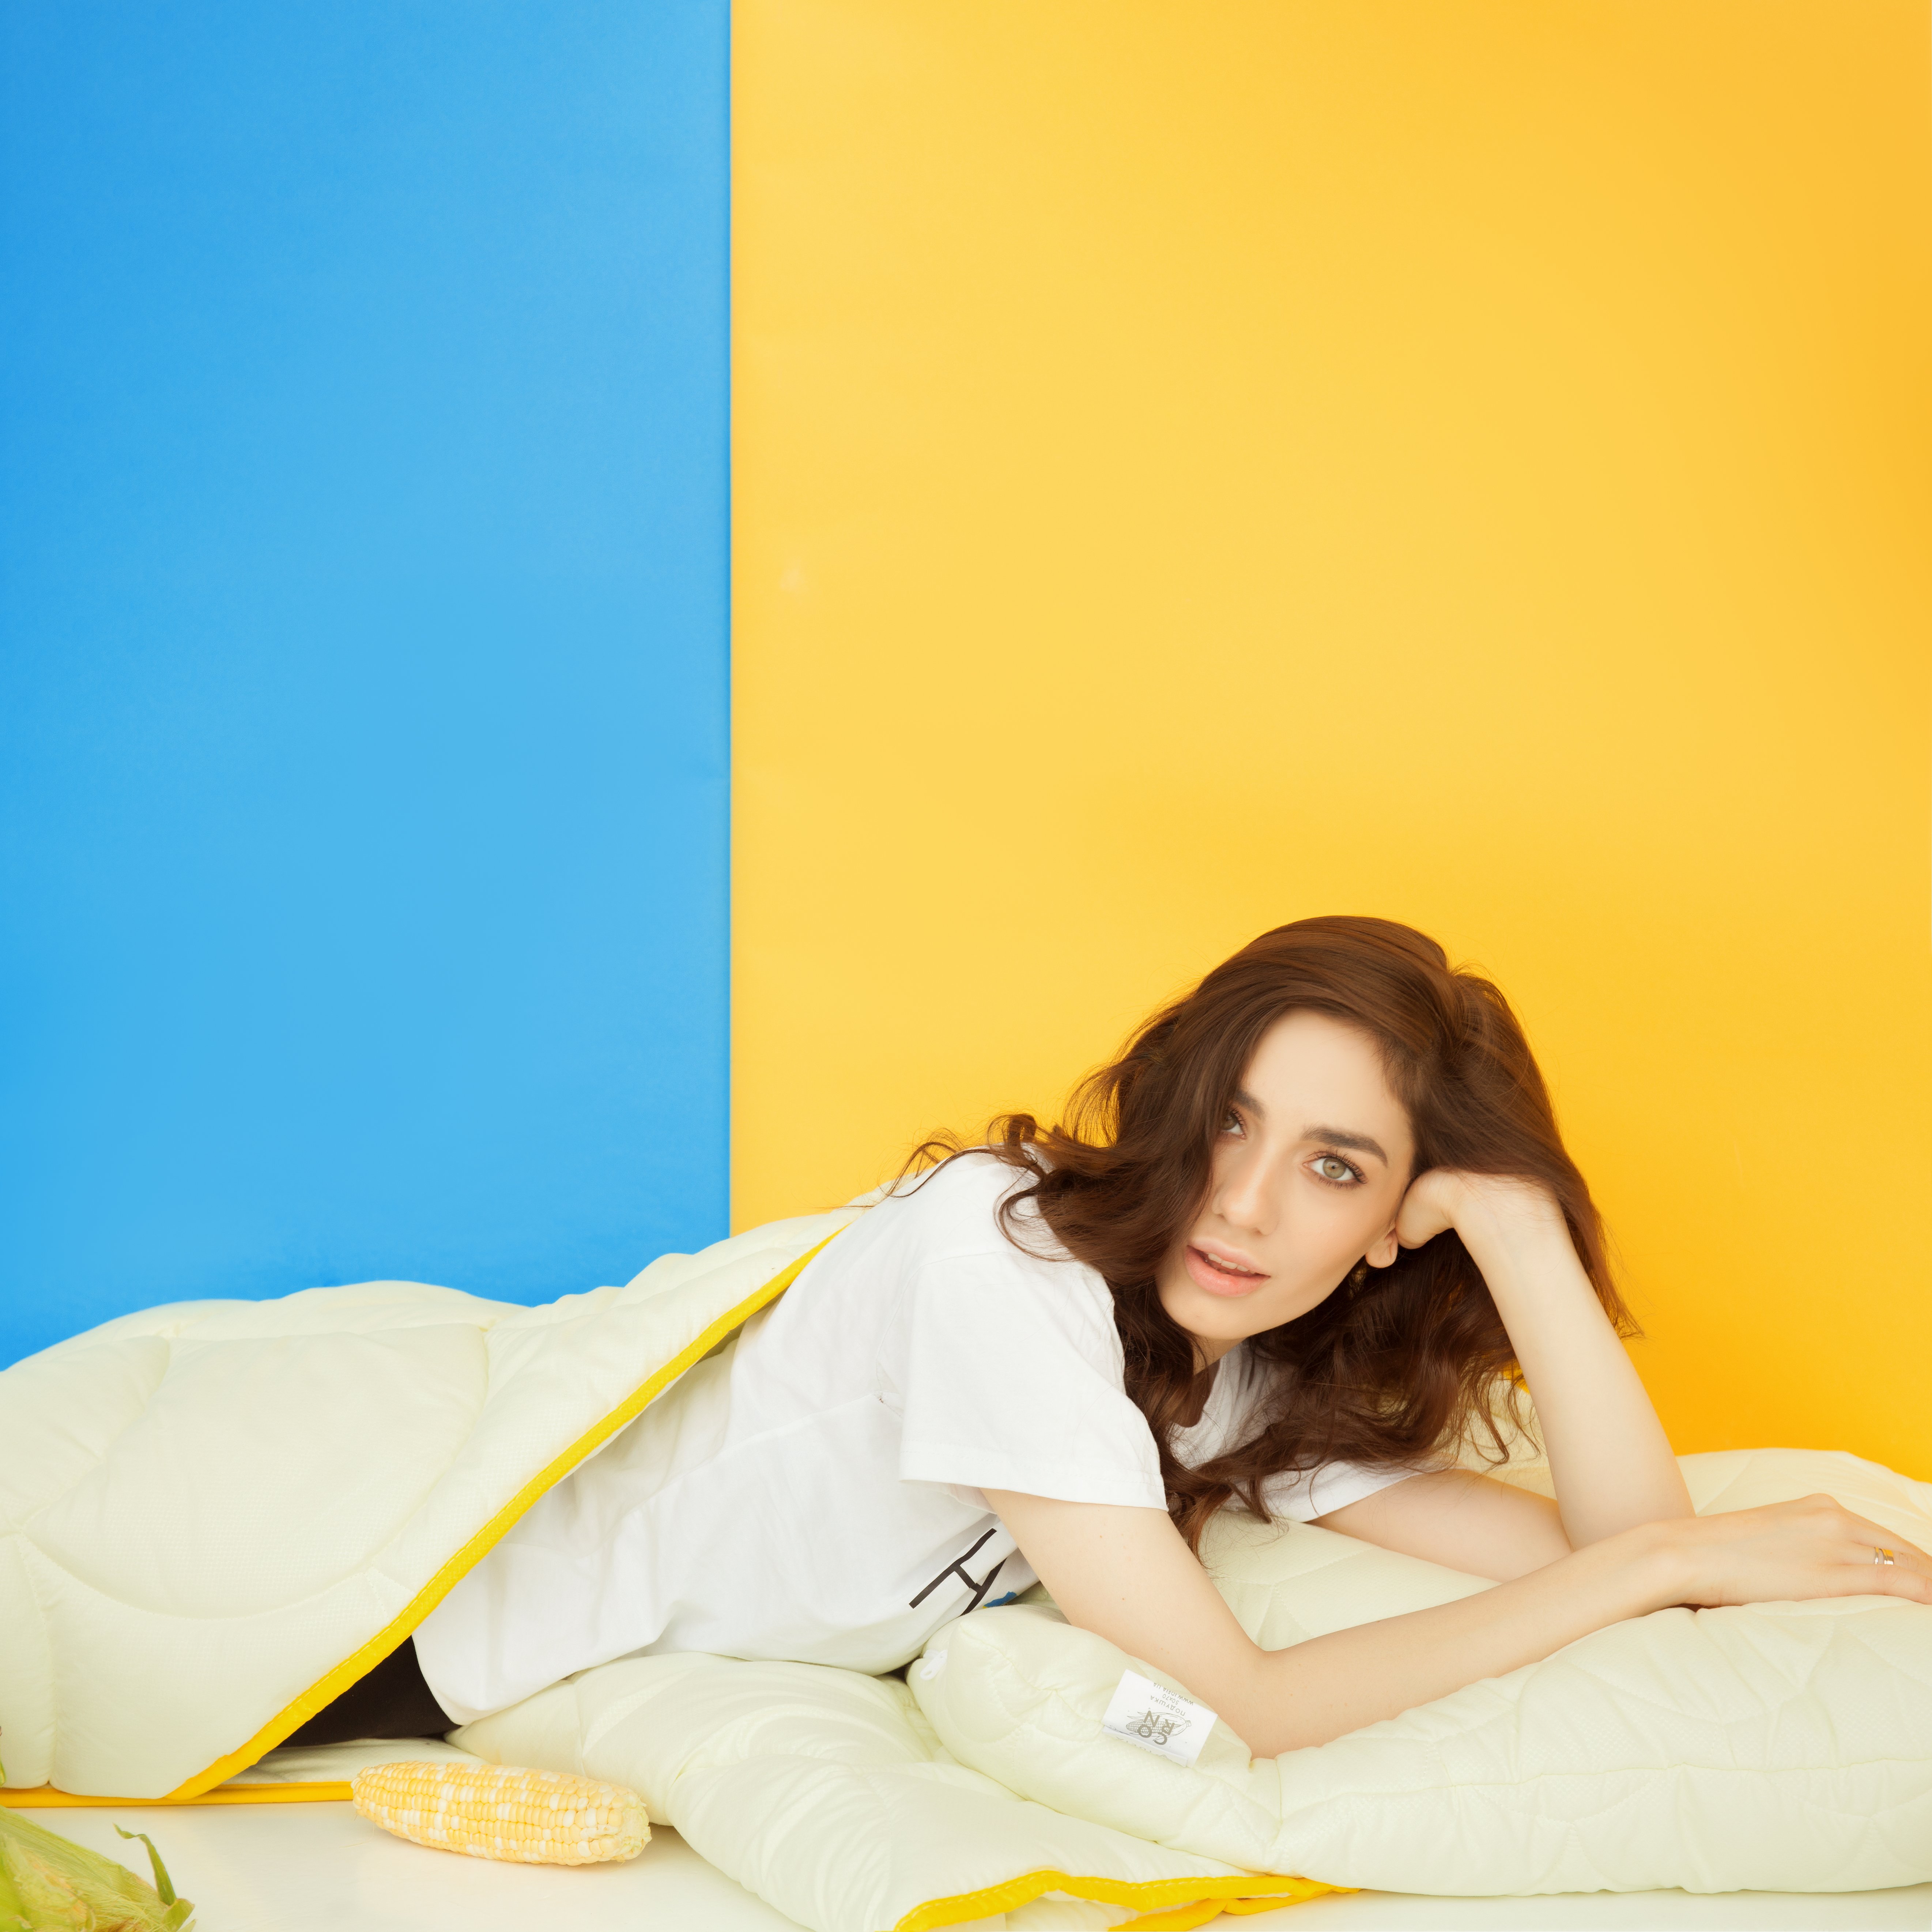 Одеяло зимнее Ideia Popcorn, полуторный, 200х140 см, молочный (8-35036 молоко) - фото 11